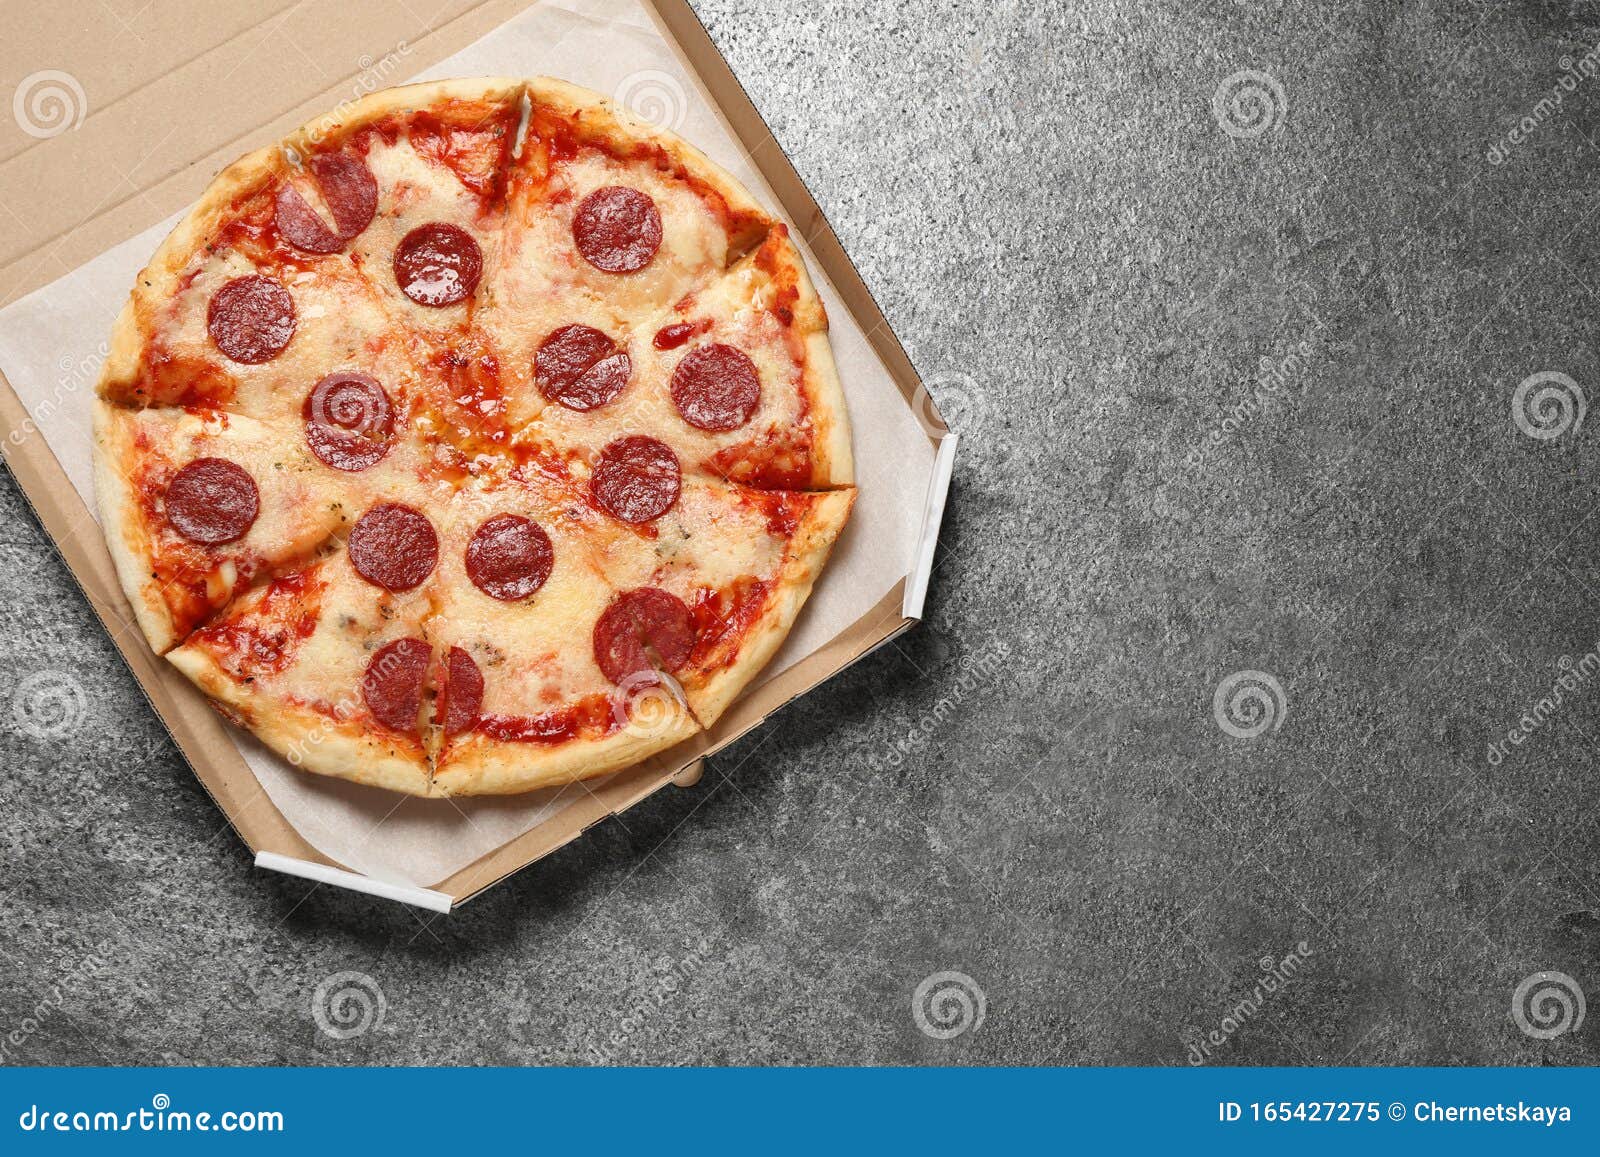 фото пепперони пицца в коробке фото 14